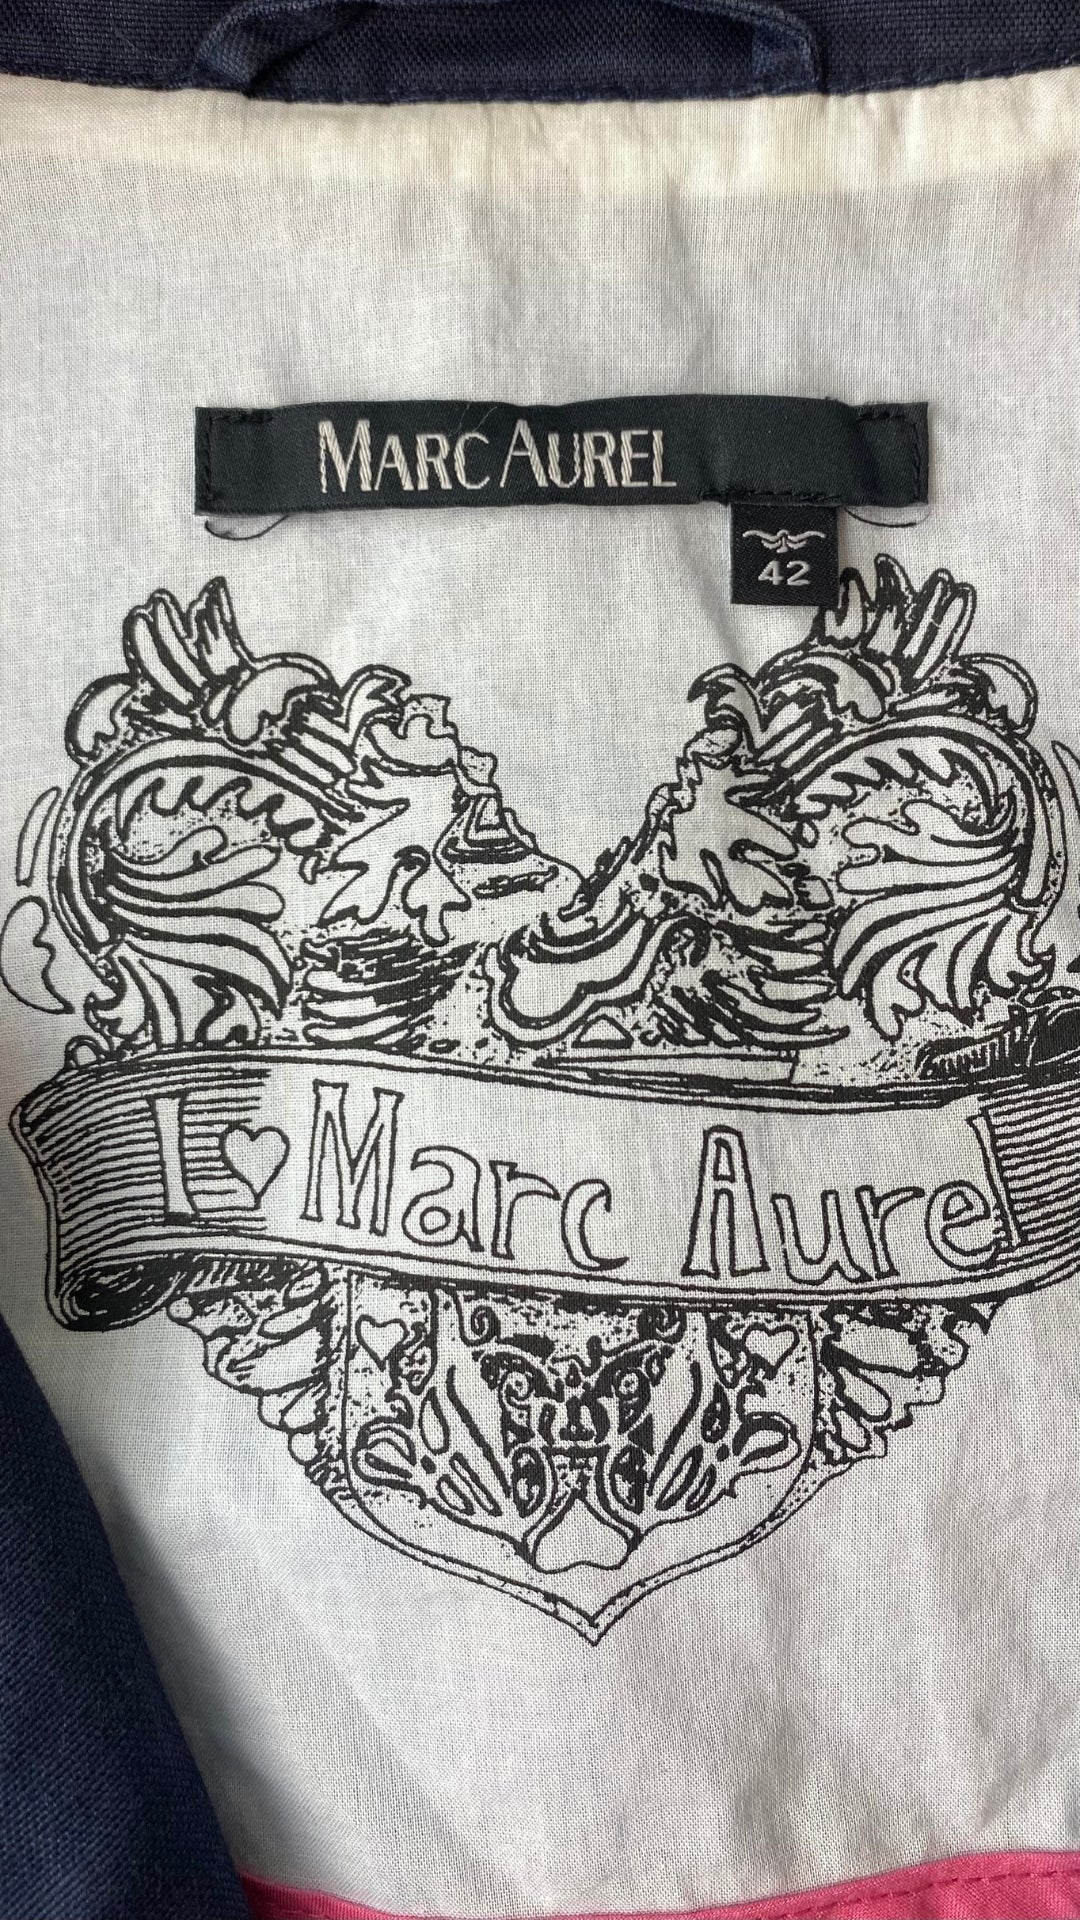 Veste printanière nautique Marc Aurel, taille 42 (estimée à m/l). Vue de l'étiquette de marque et taille.